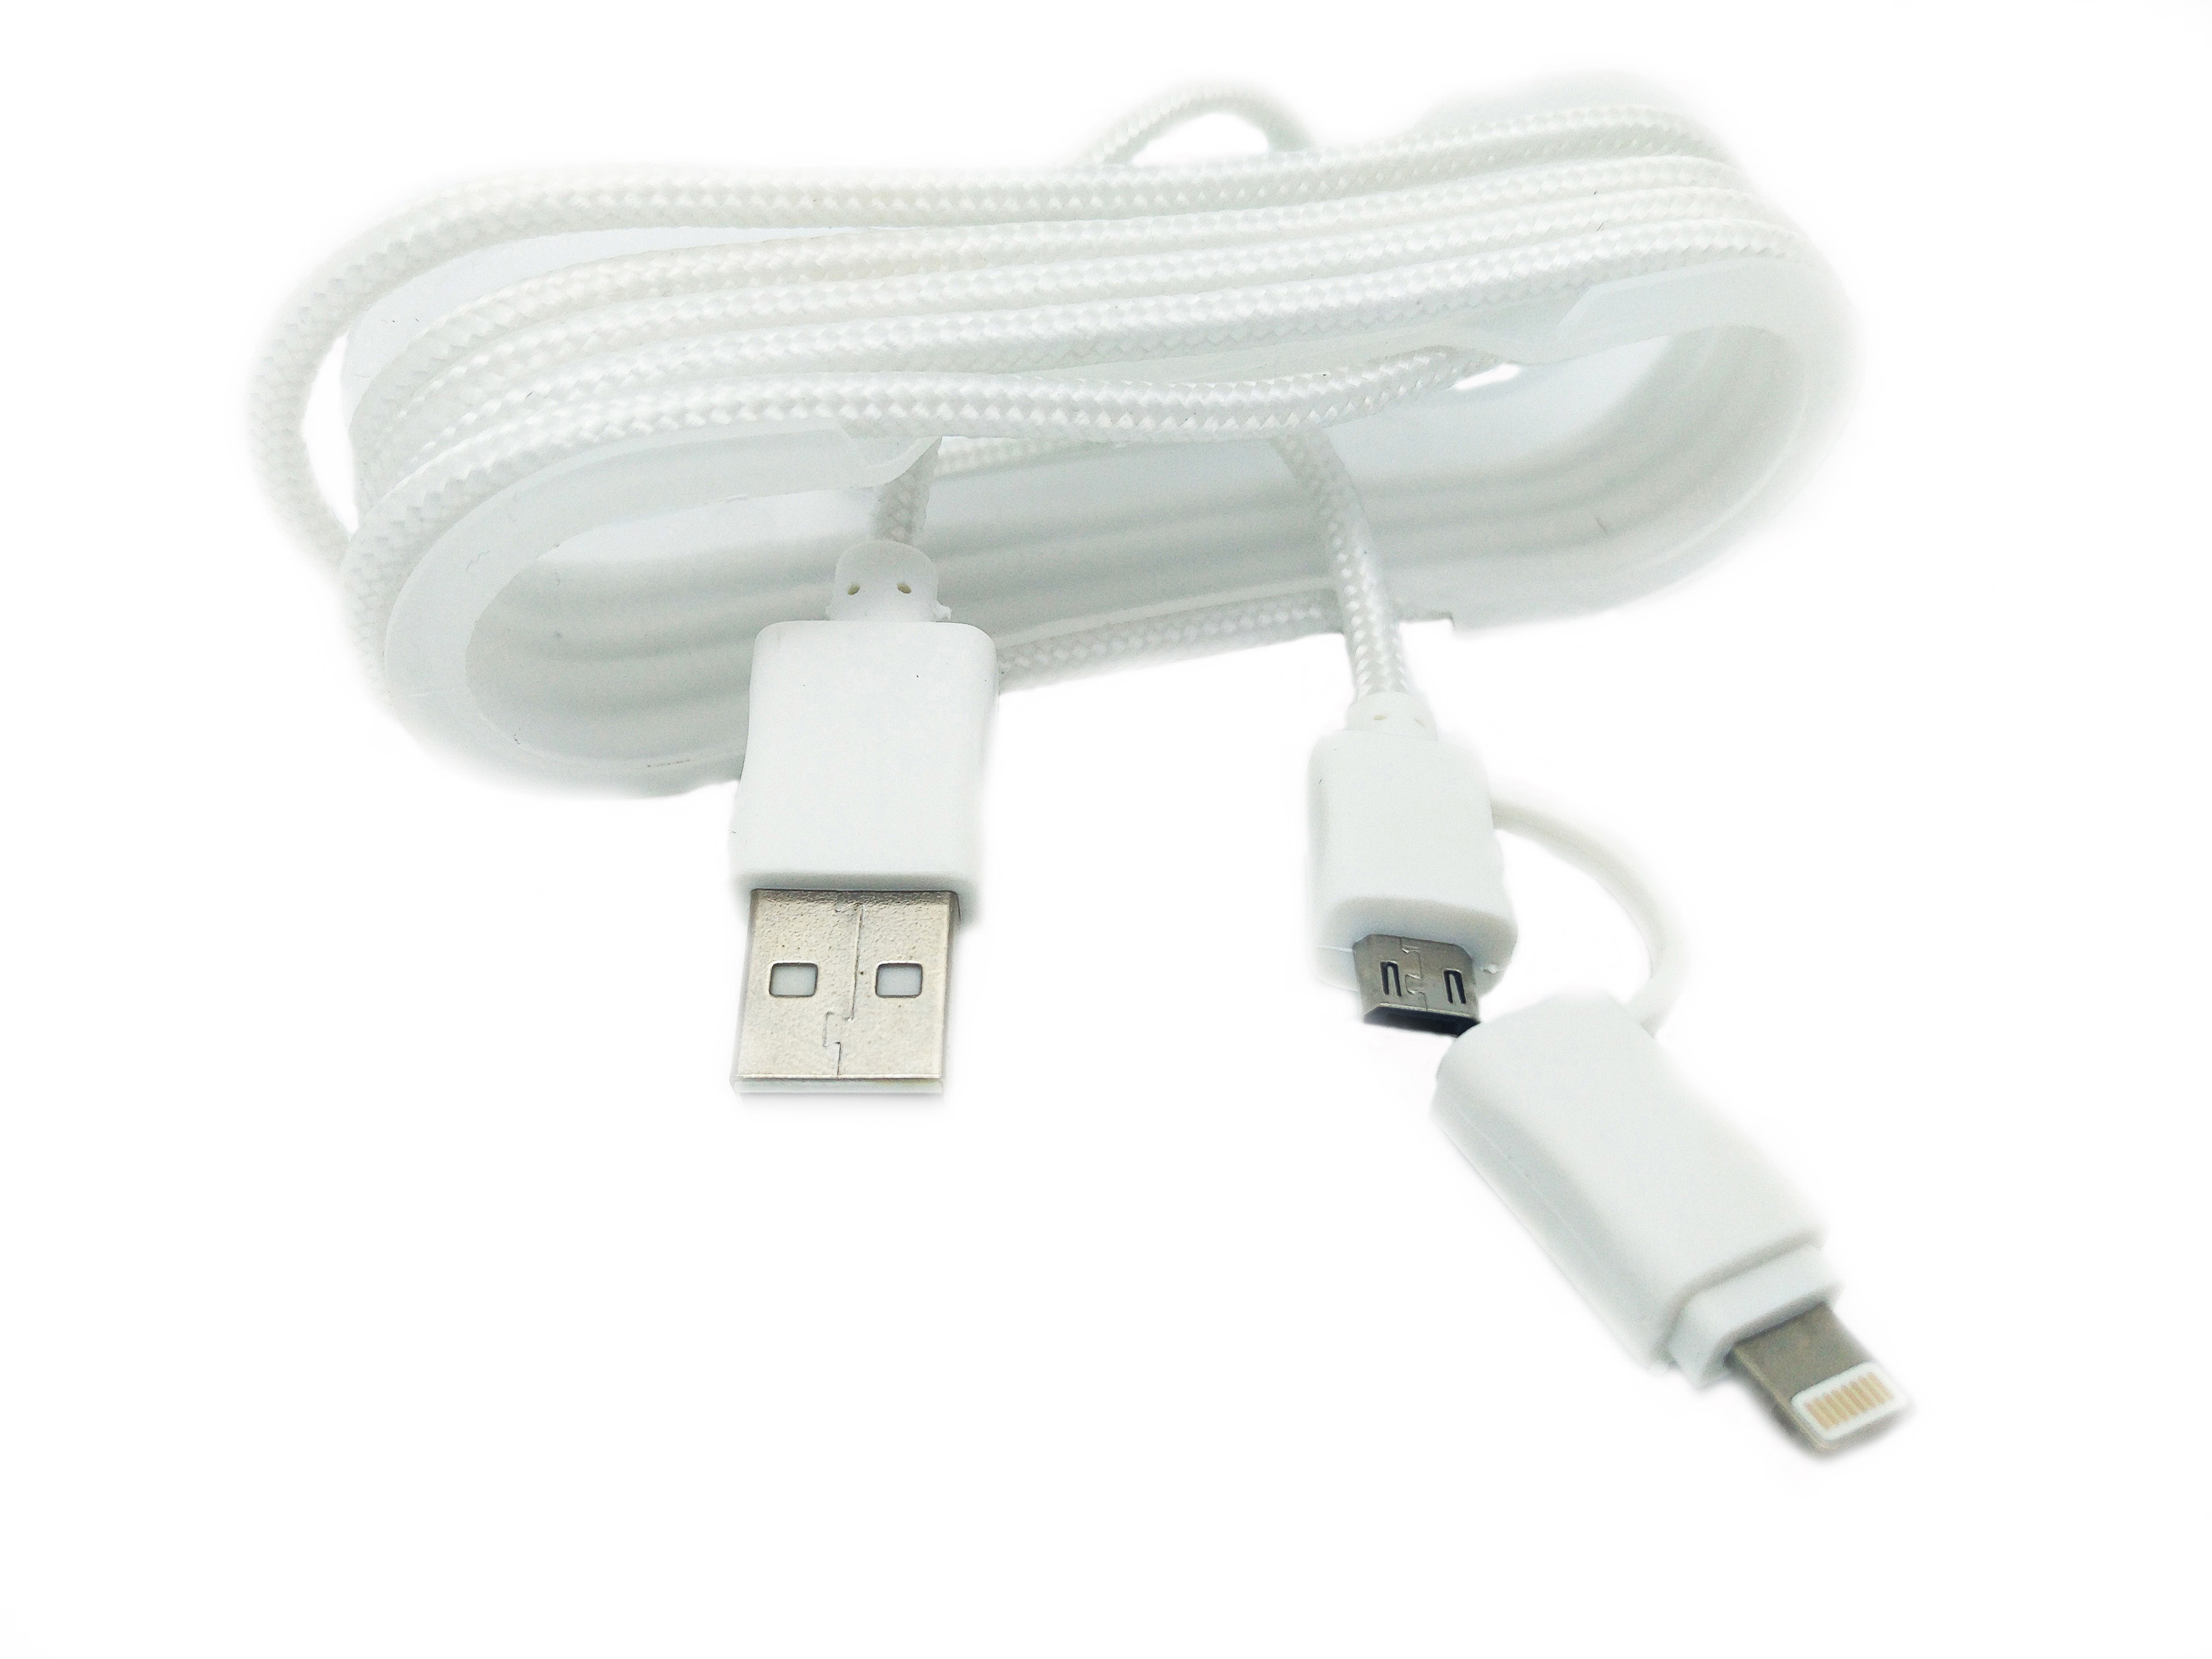 Cablu De Date MRG M-175, 2 In 1, Iphone 5/6 + Micro USB, Alb